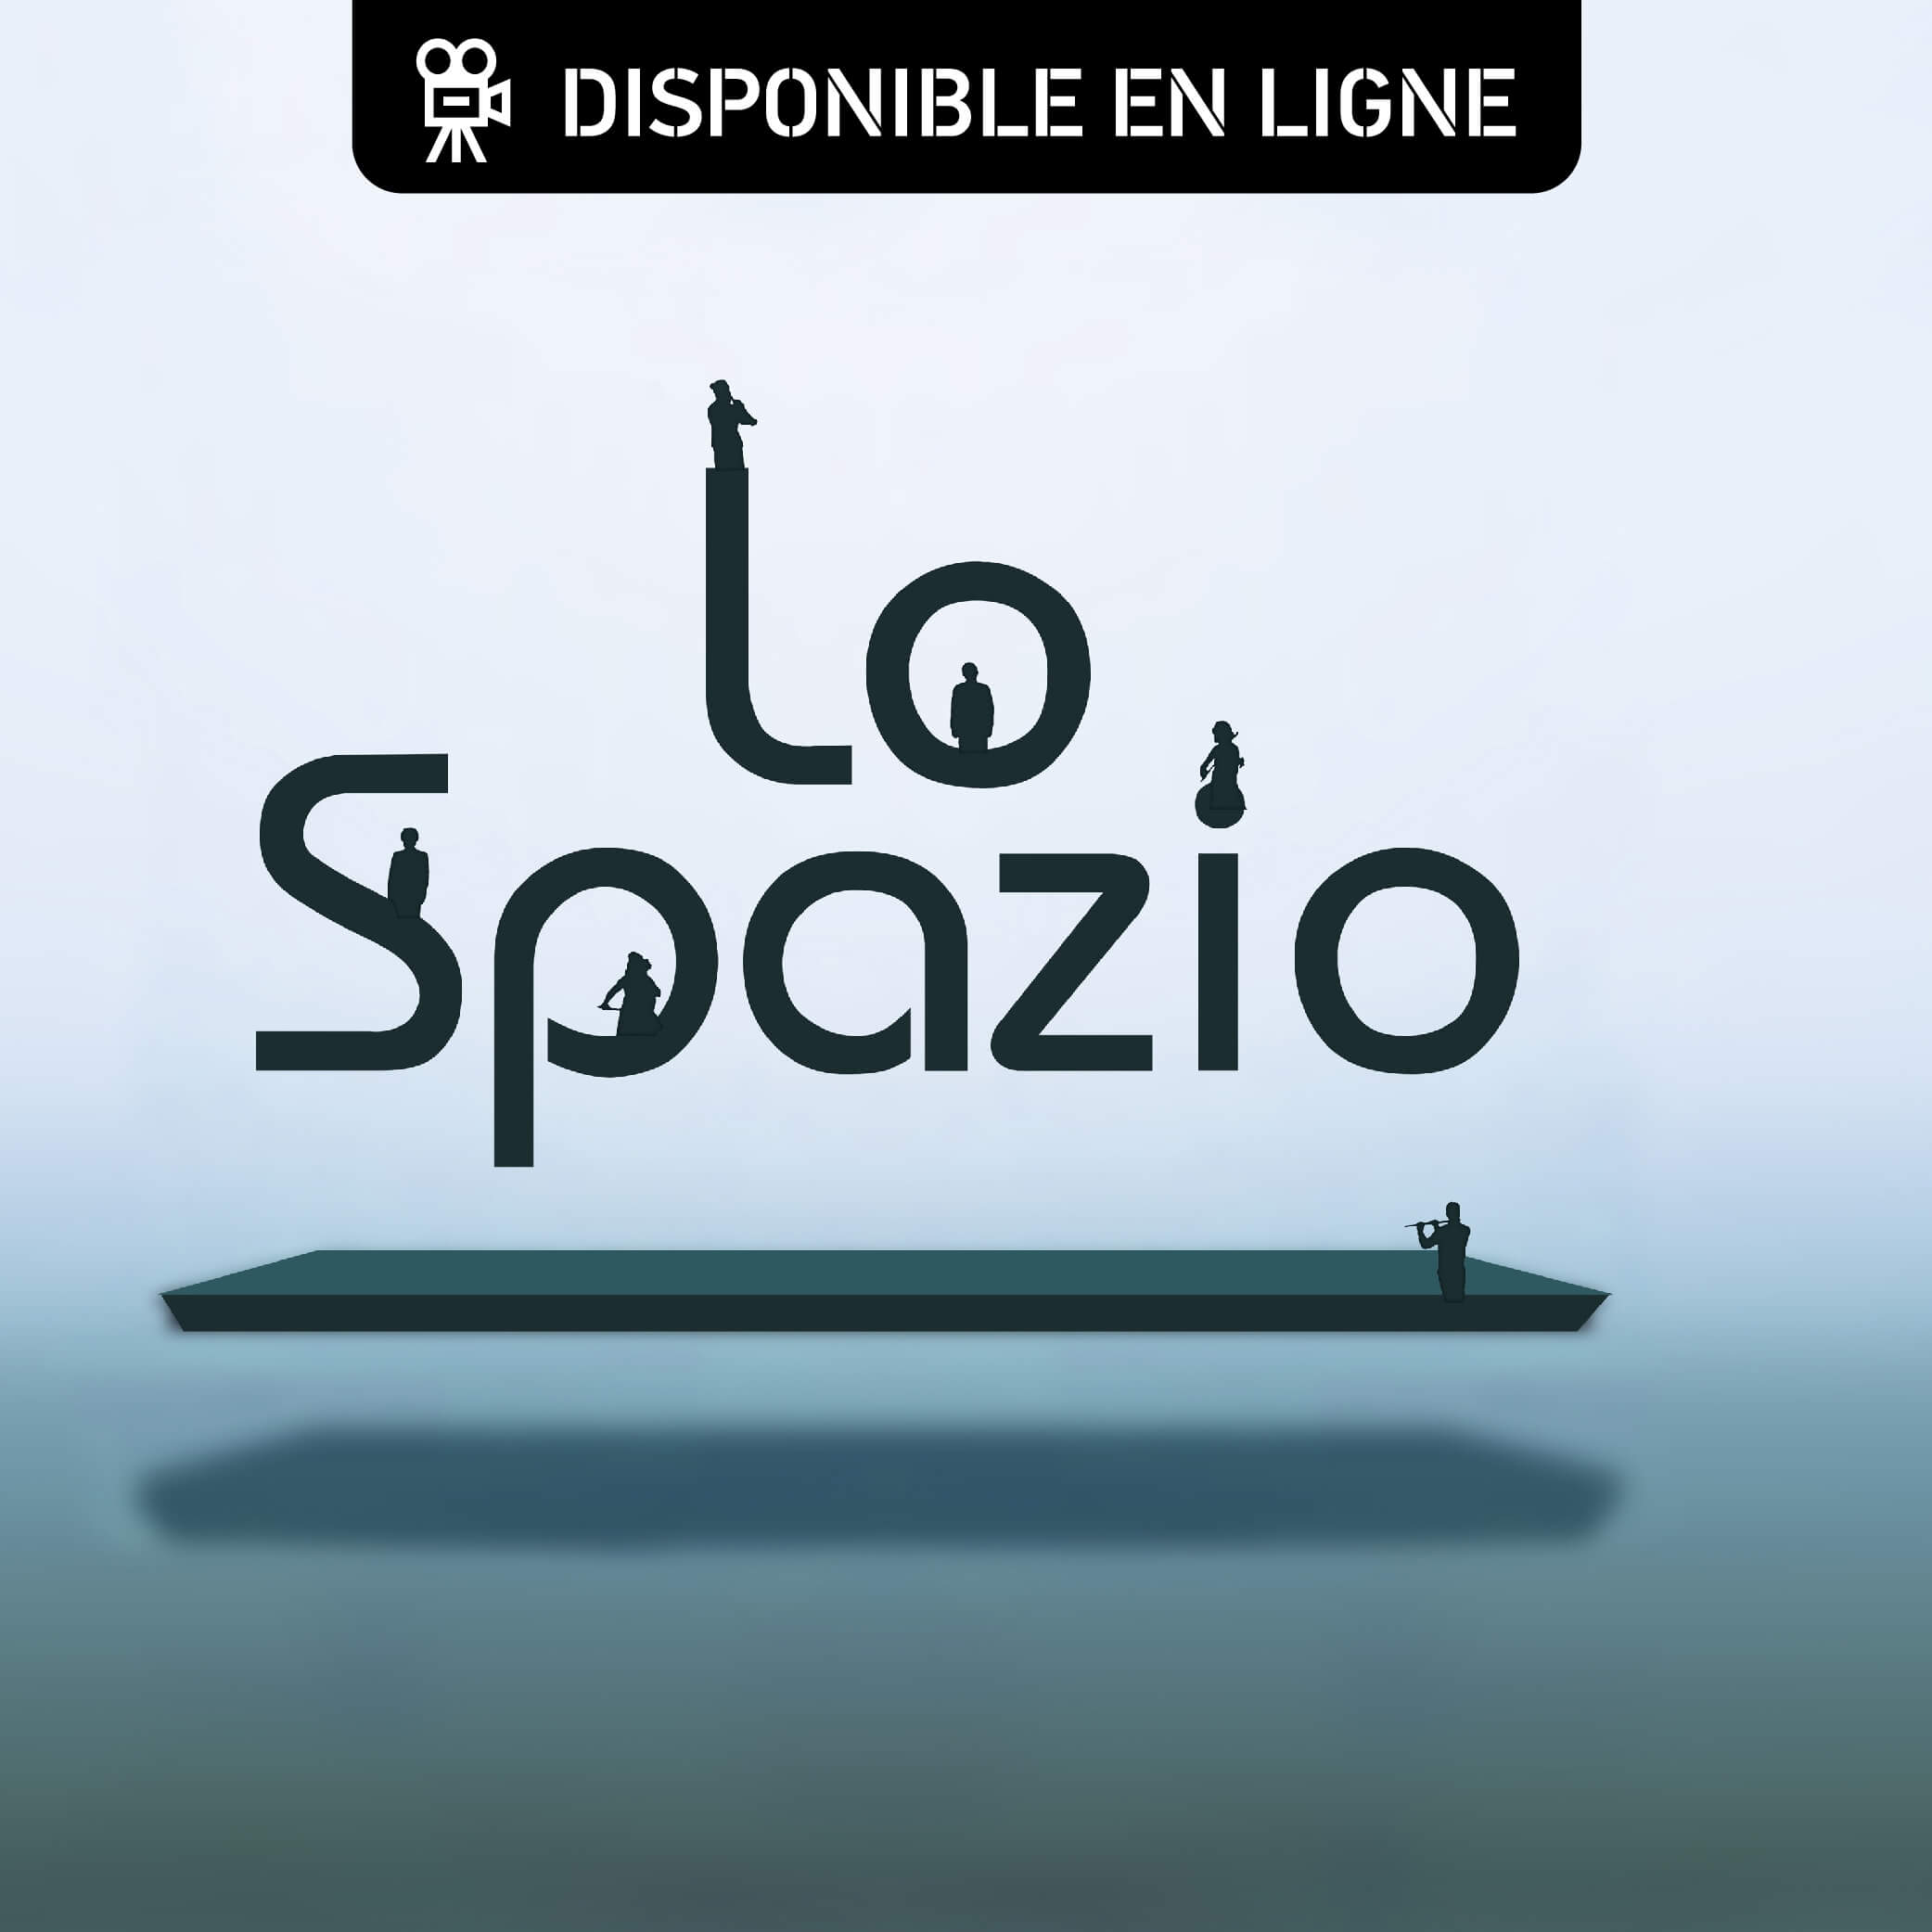 Poster for the event Lo Spazio